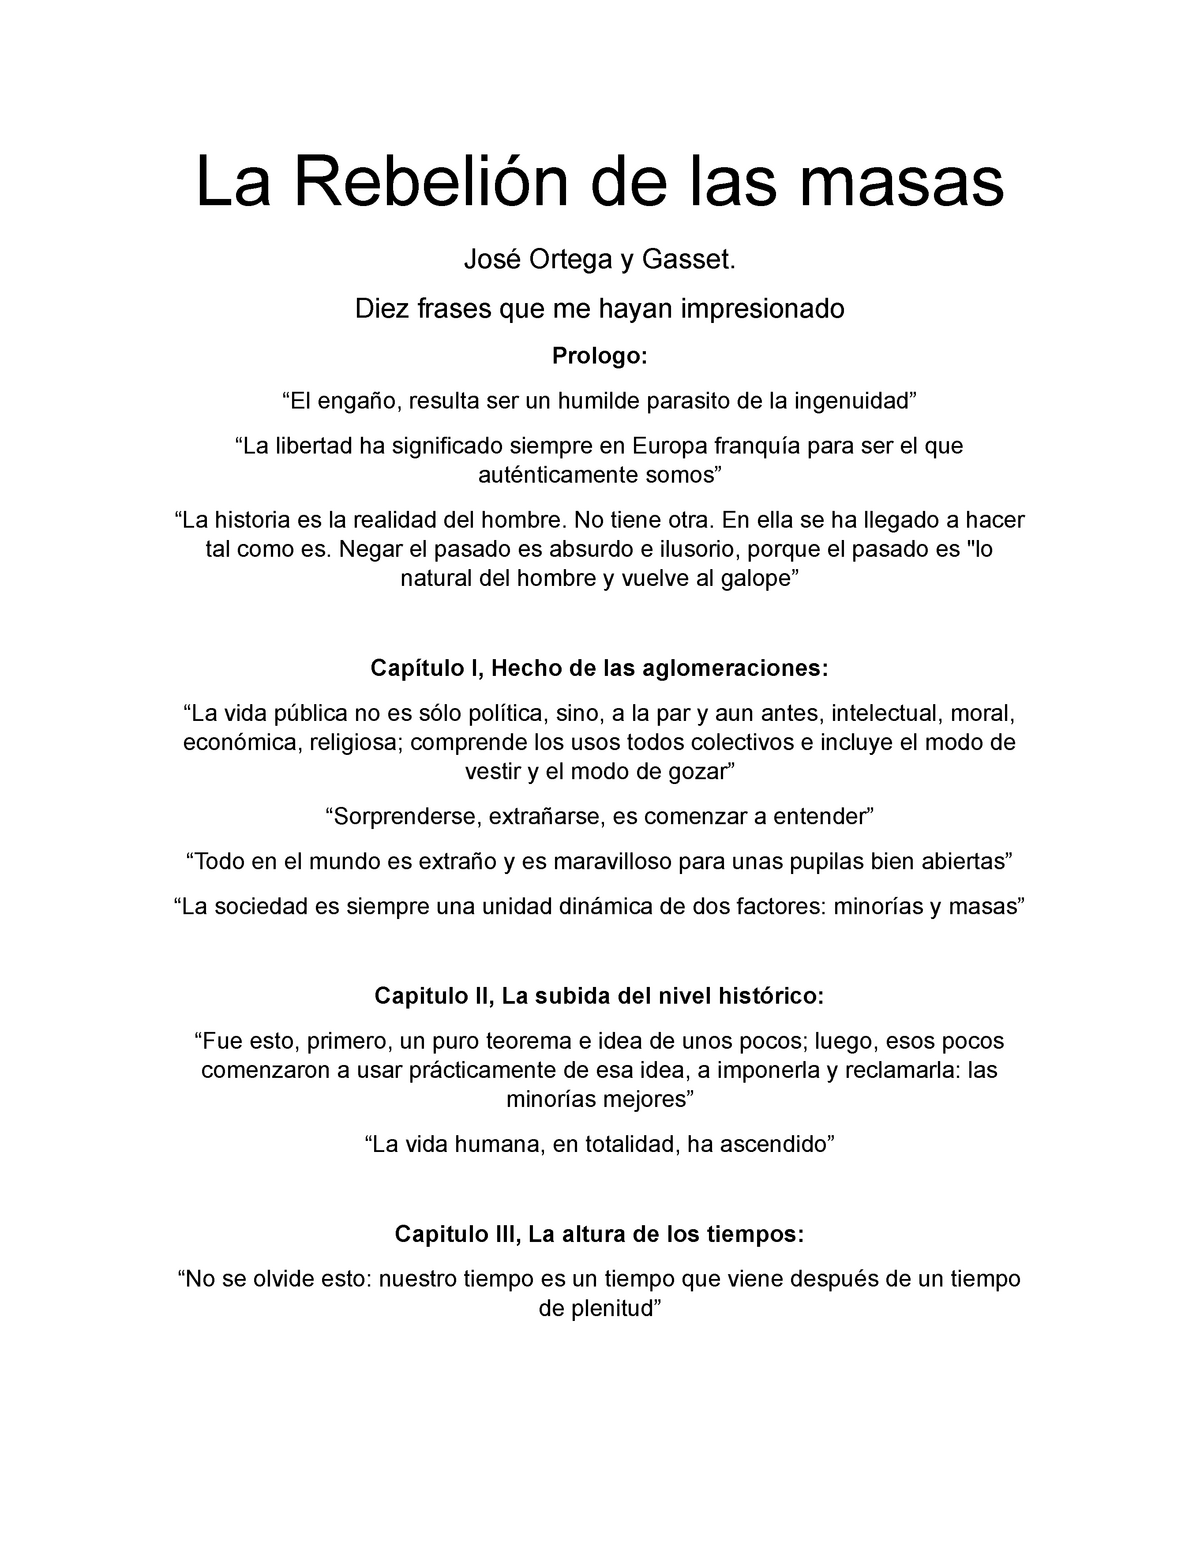 La Rebelion de las masas 10 frases celebres - La Rebelión las masas José Ortega y Gasset. Diez - Studocu